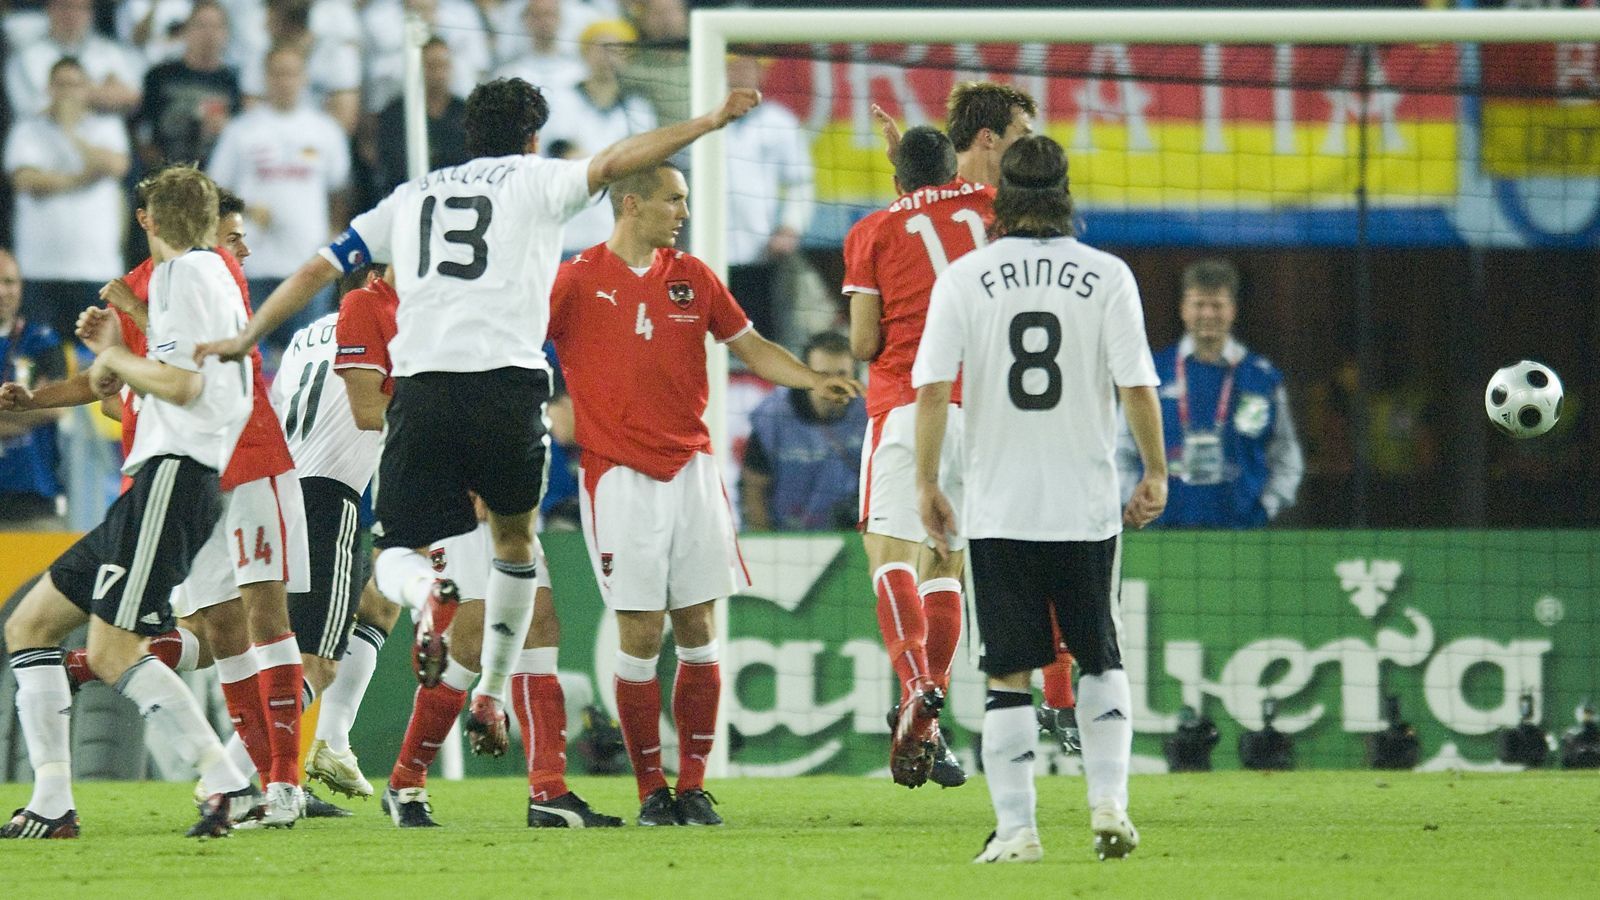 <strong>Österreich scheidet bei der Heim-EM 2008 aus</strong>&nbsp;<br>Deutschland und Österreich brauchten einen Sieg, die umkämpfte Partie wurde durch eine Freistoß-Rakete von Michael Ballack kurz nach der Halbzeit entschieden. Österreich schied bei der Heim-EM aus, es war eine der bittersten Niederlagen für das ÖFB-Team.